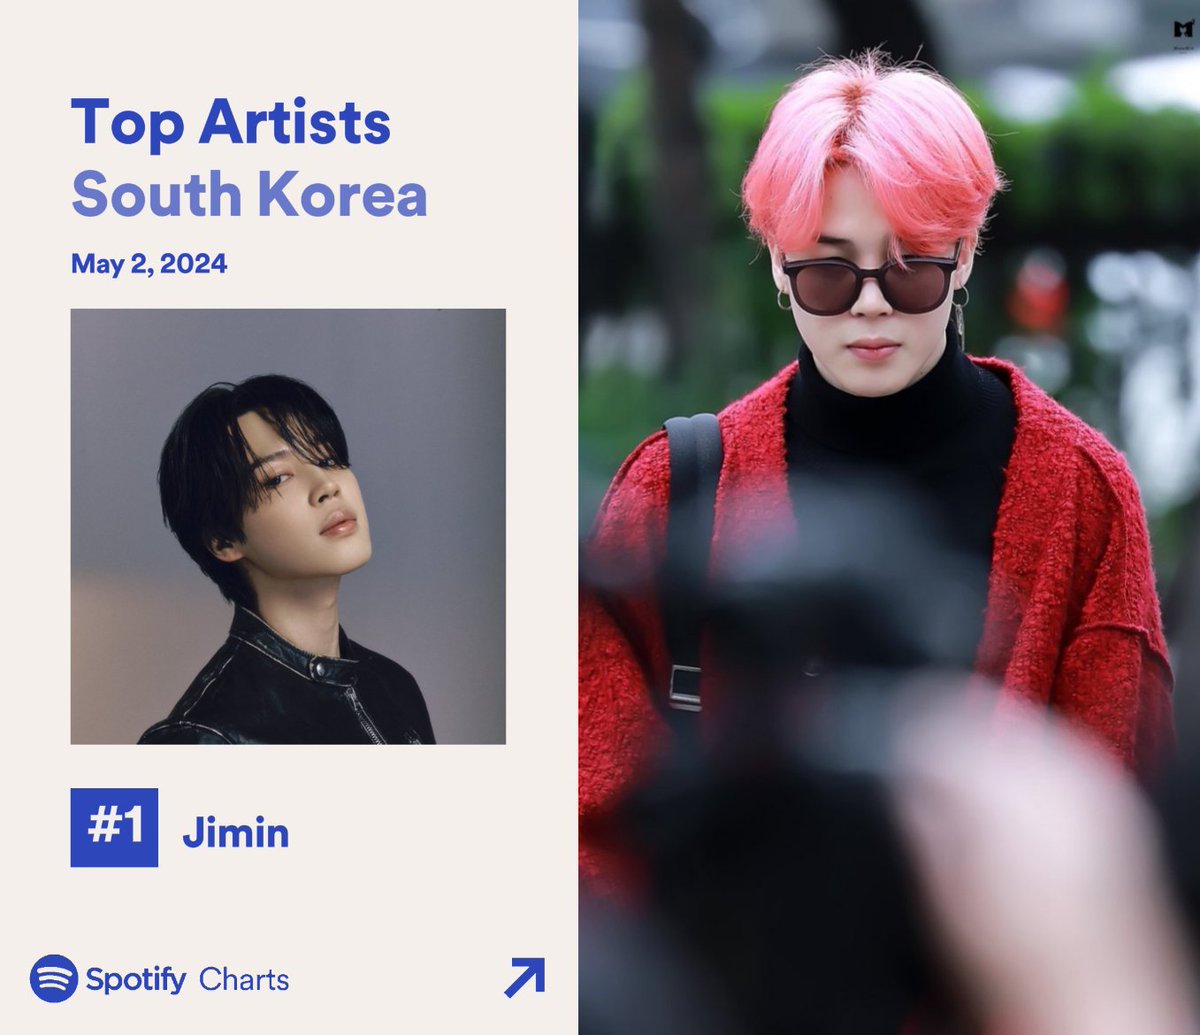 2024년 5월 2일 SPOTIFY DAILY TOP ARTISTS SOUTH KOREA 차트에서 지민이 1위를 유지하며, 해당 차트 역사상 솔로이스트로서 최초이자 유일한 298번째 1위에 올랐습니다.

476일 연속 차트인을 포함하여, 토탈 635일째 차트인입니다.

축하해요 지민🎉
#JIMIN #ParkJimin #지민
@BTS_twt